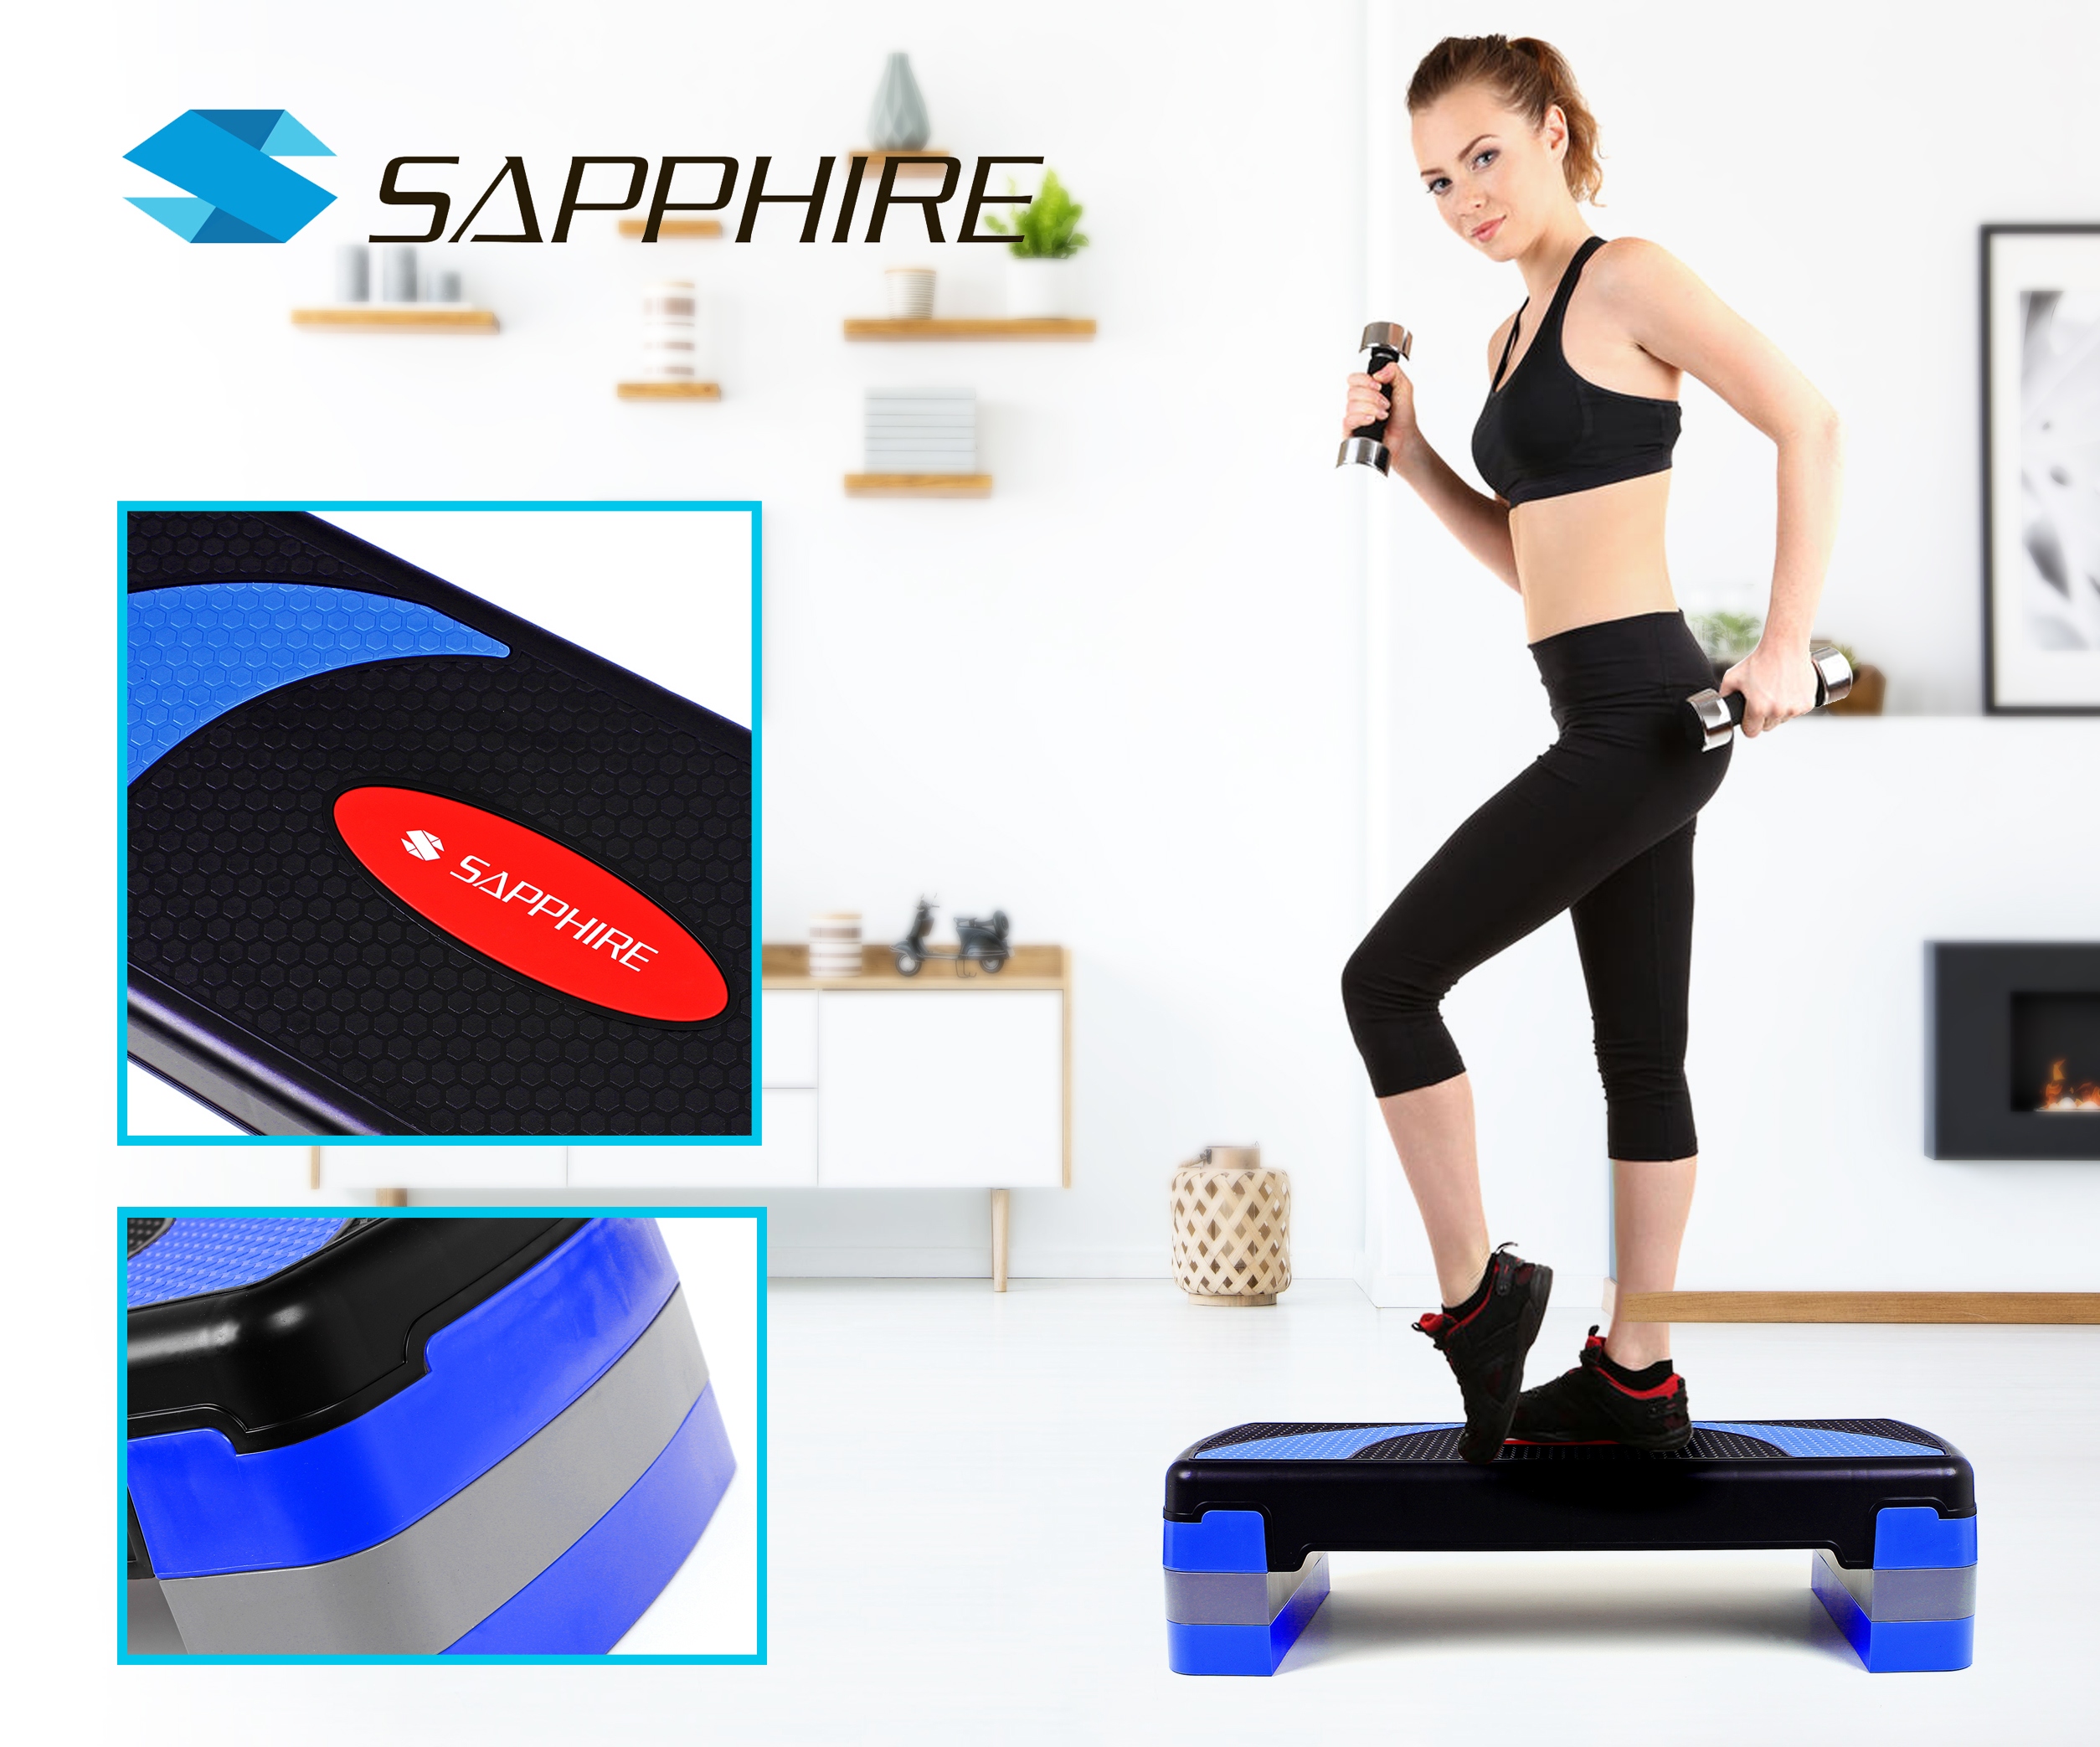 Step fitness trzystopniowy Sapphire SG-055 z kategorii Pilates i joga, marka Sapphire 